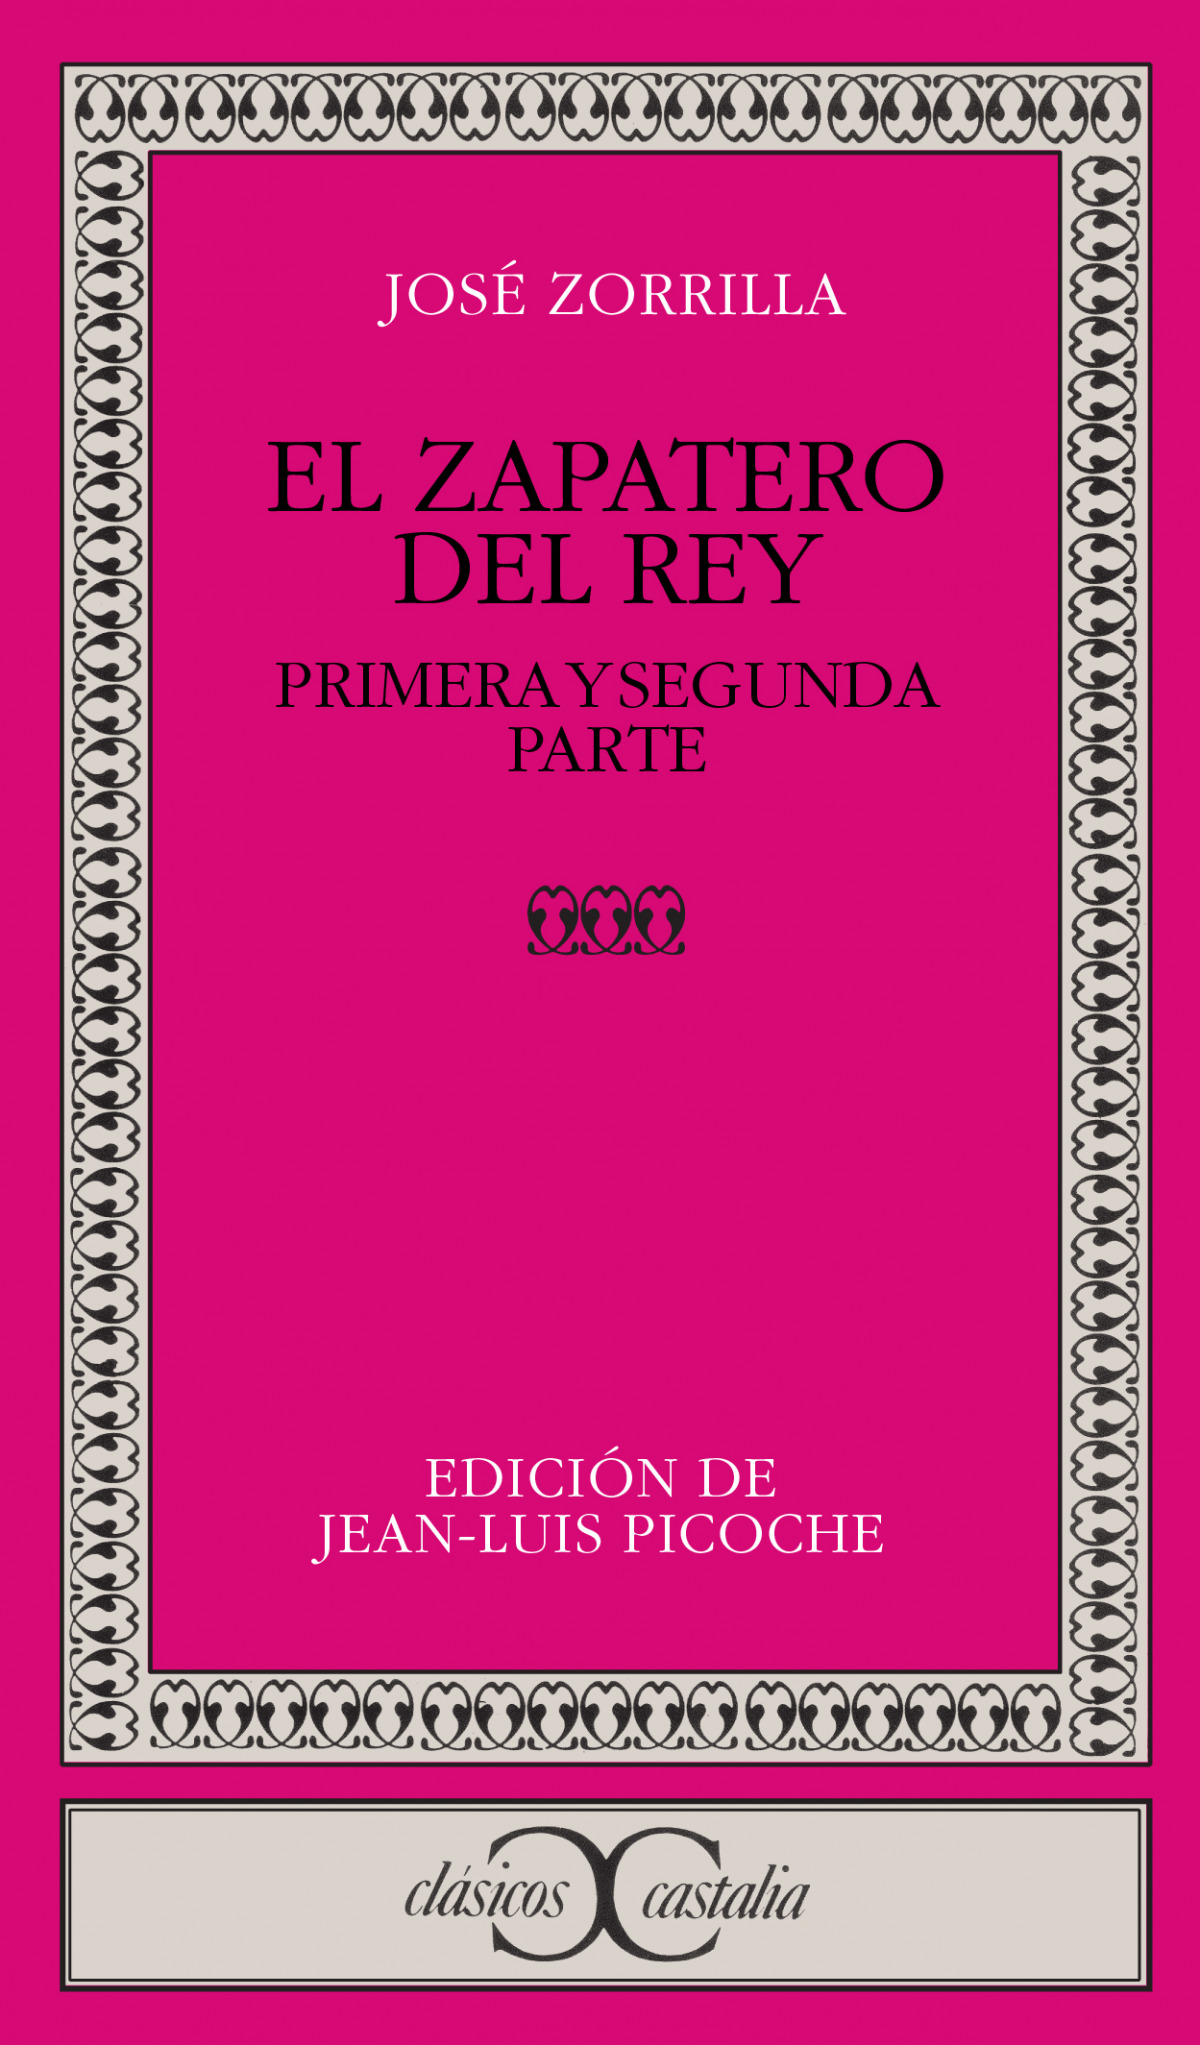 Zapatero y el rey - Zorrilla, Jose